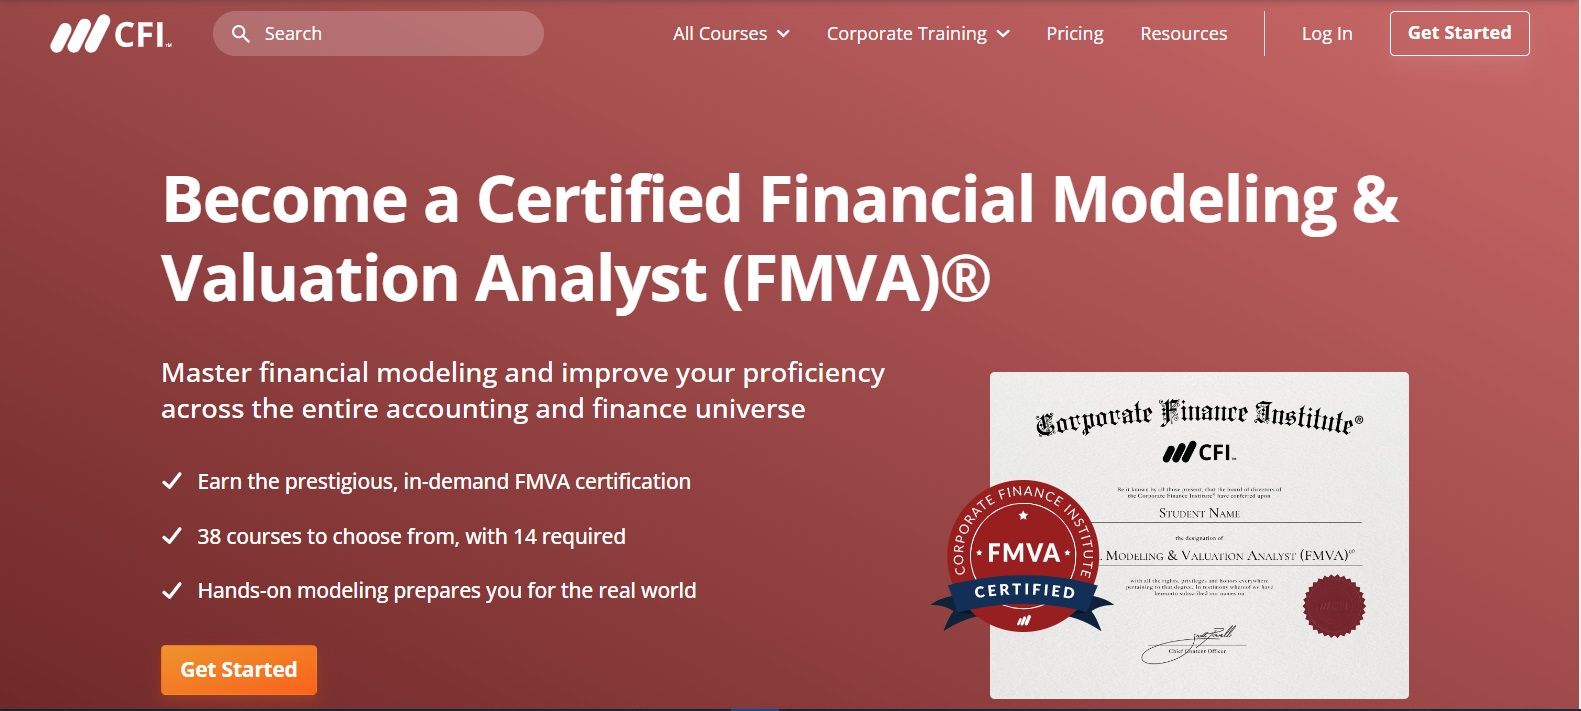 CFI's FMVA Certification